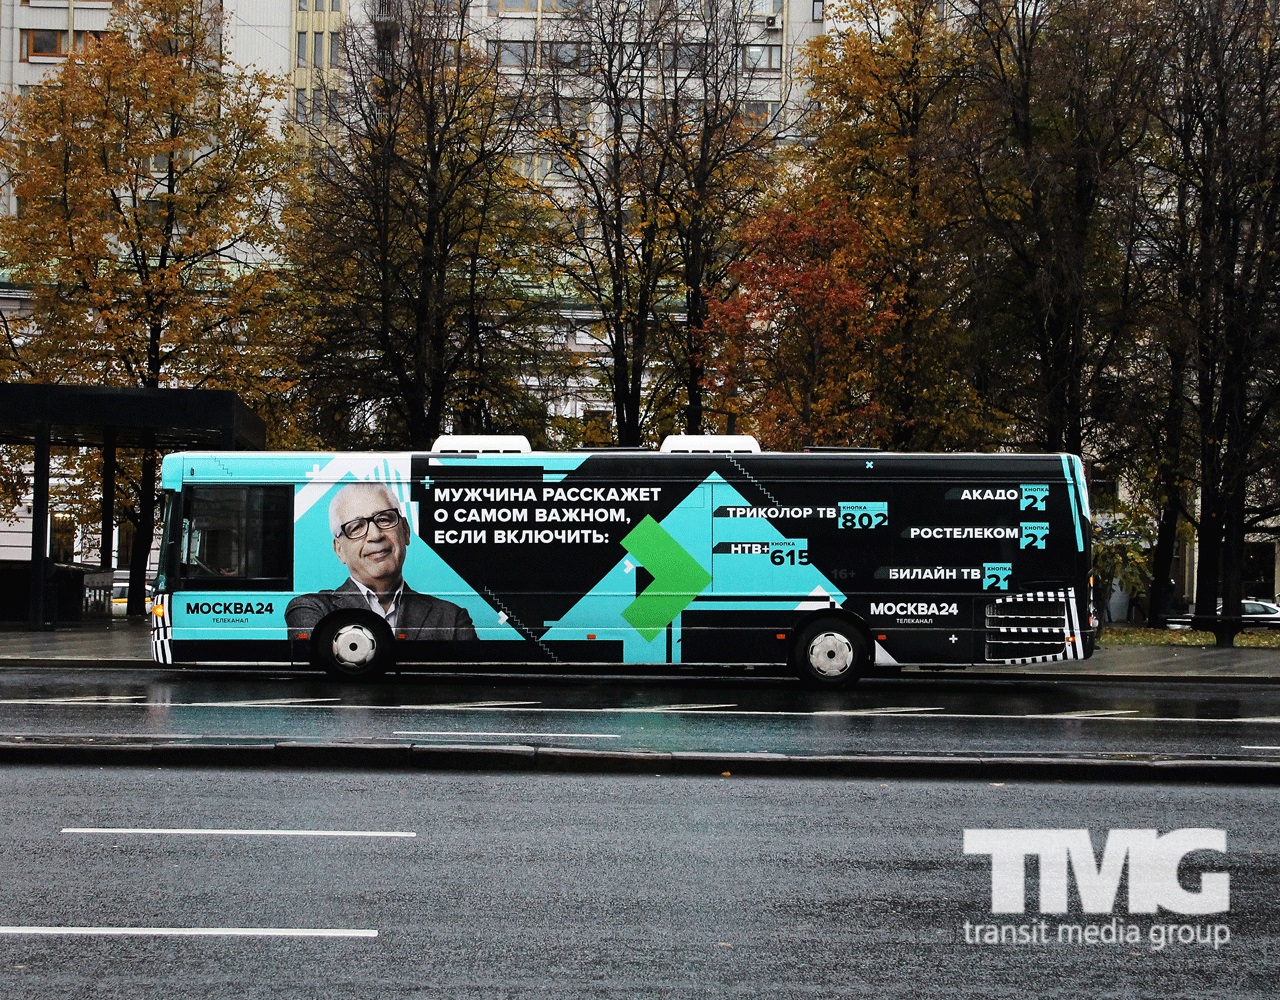 TMG Москва24 наружная реклама на транспорте Москва